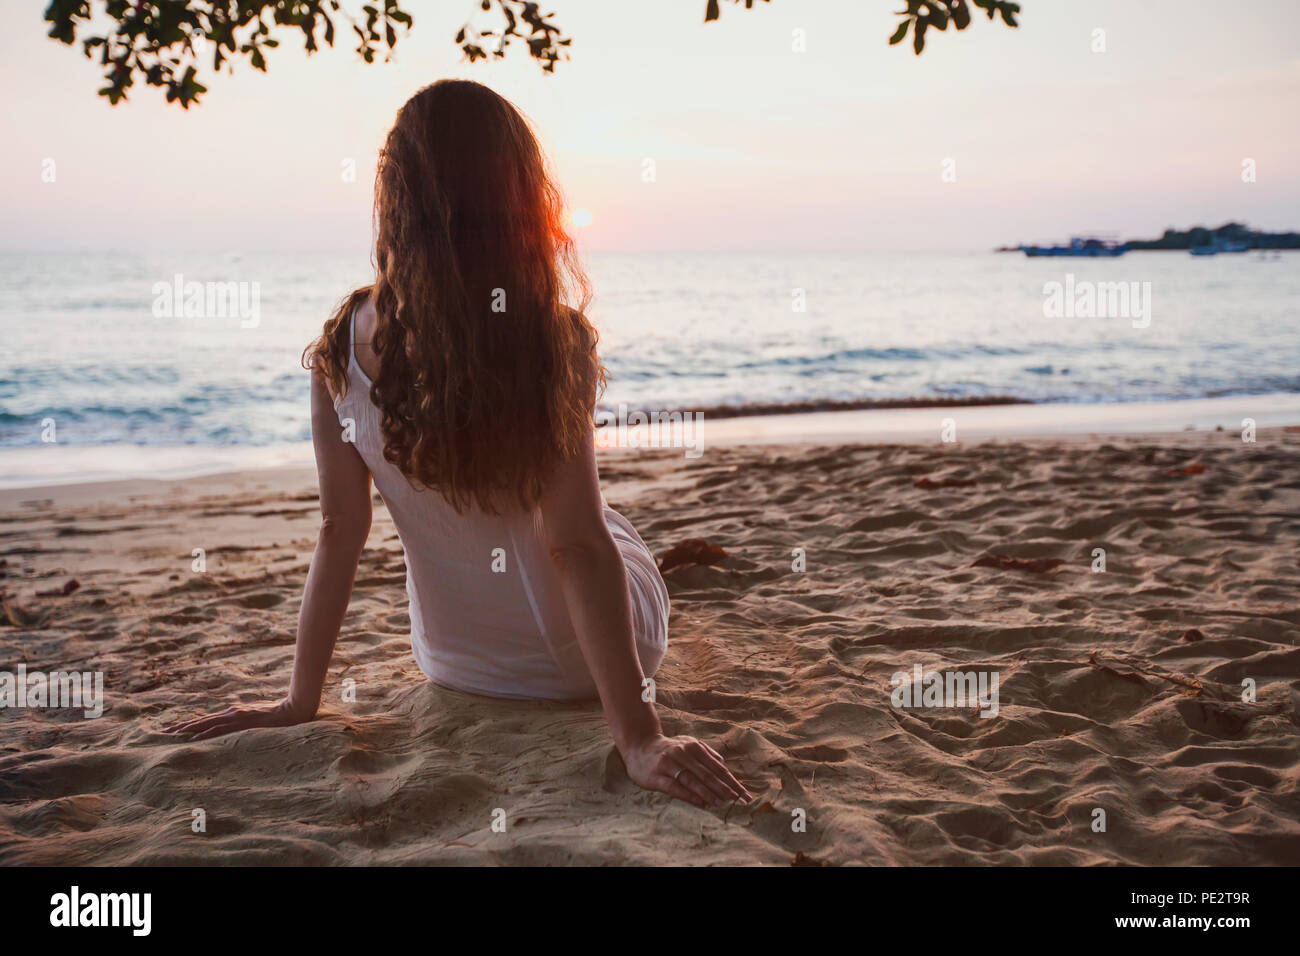 Los sueños románticos, hermosa chica sentada sola en la calma tranquila sunset beach, relajación Foto de stock